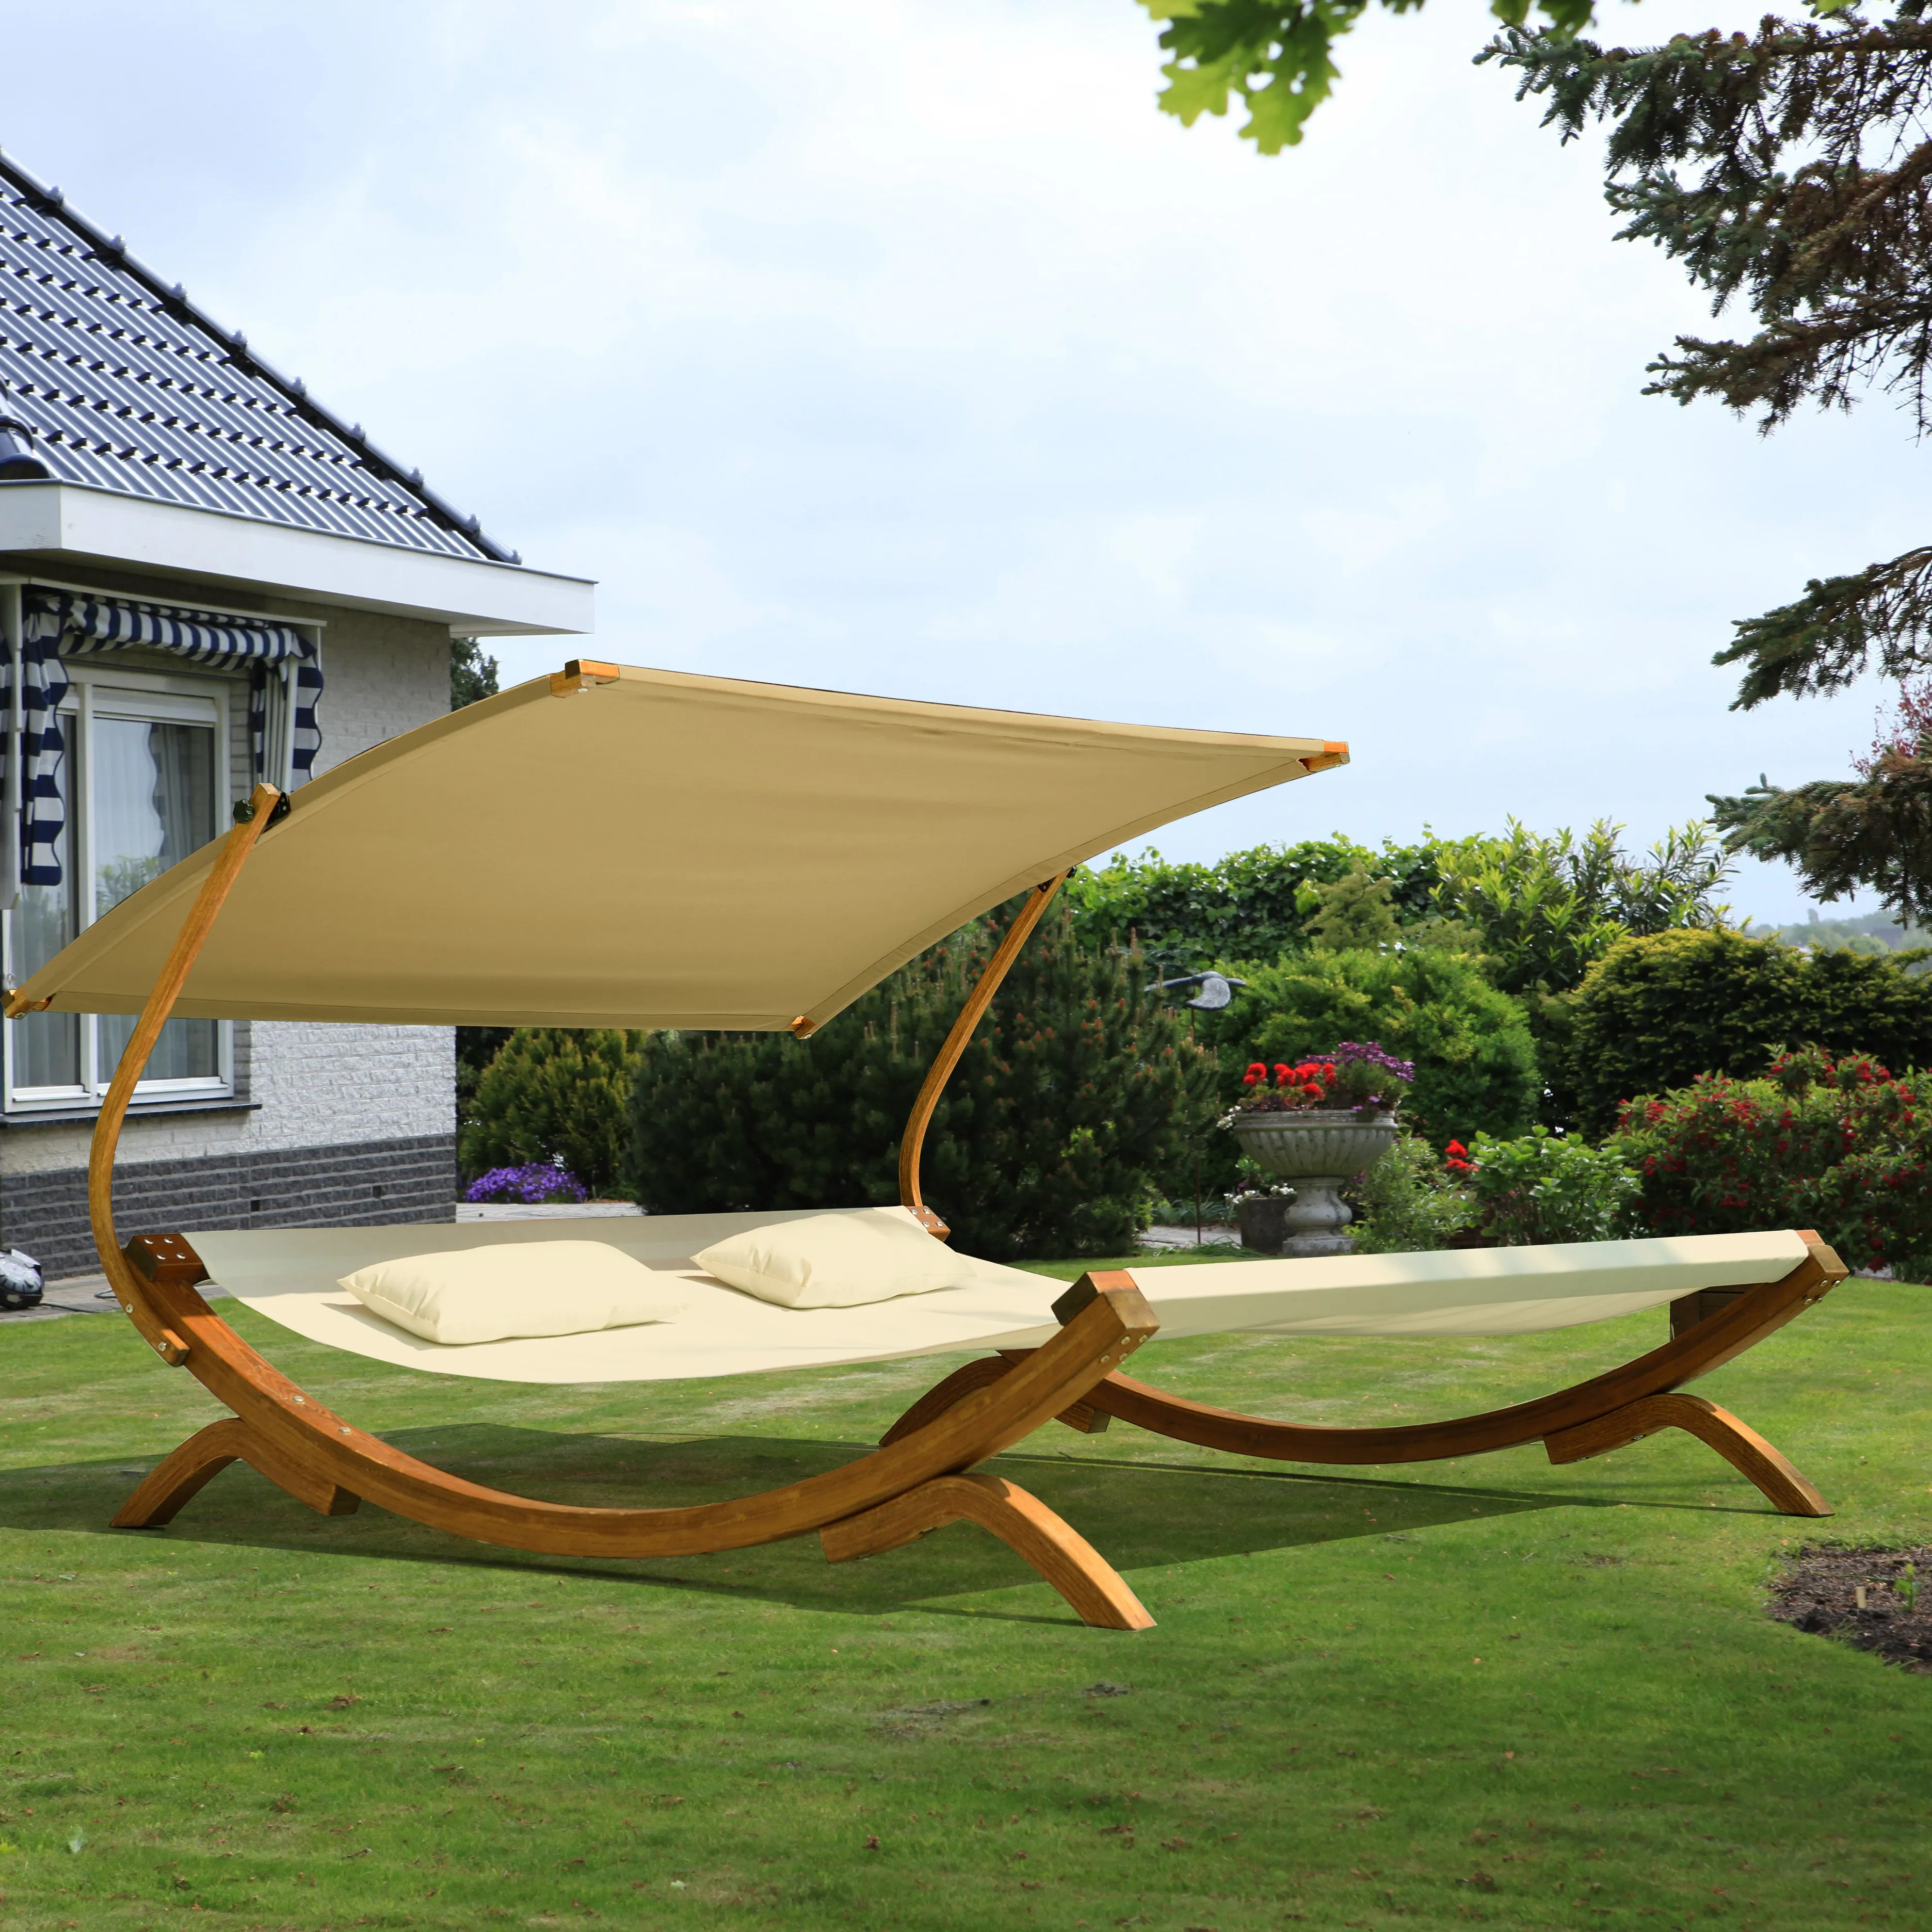 Cama solar doble de madera, calidad garantizada, precio adecuado